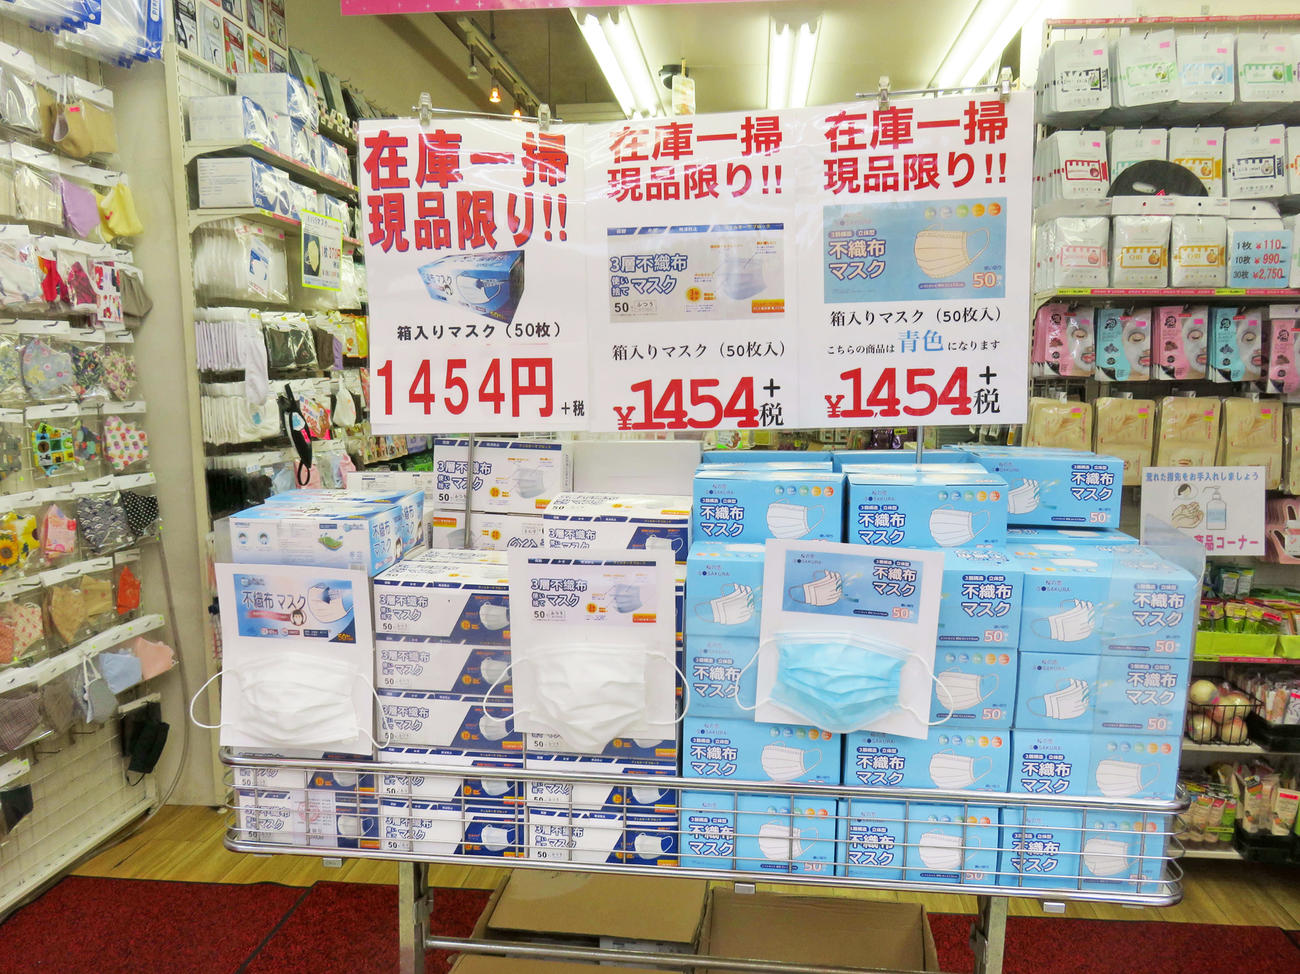 東京・新宿区の通称コリアンタウンでは50枚入りの使い捨てマスクが1箱1454円（税別）と値下がりしていた（撮影・大上悟）